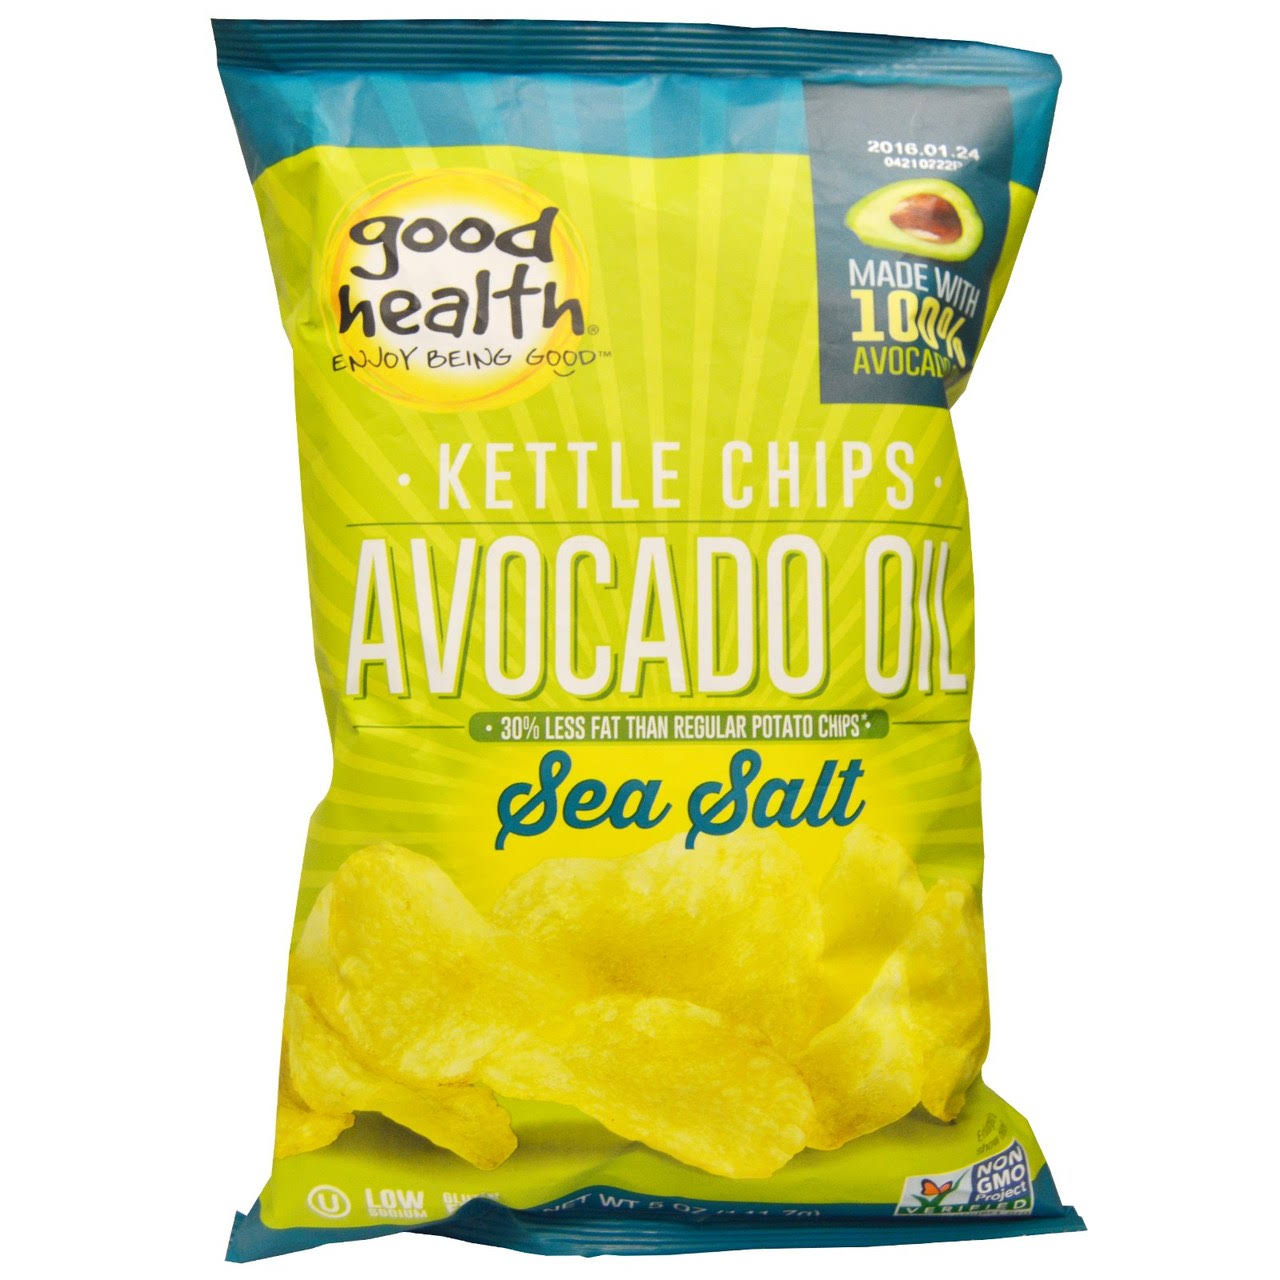 Good Health Avocado Oil Kettle Style Chips - Sea Salt, 5oz